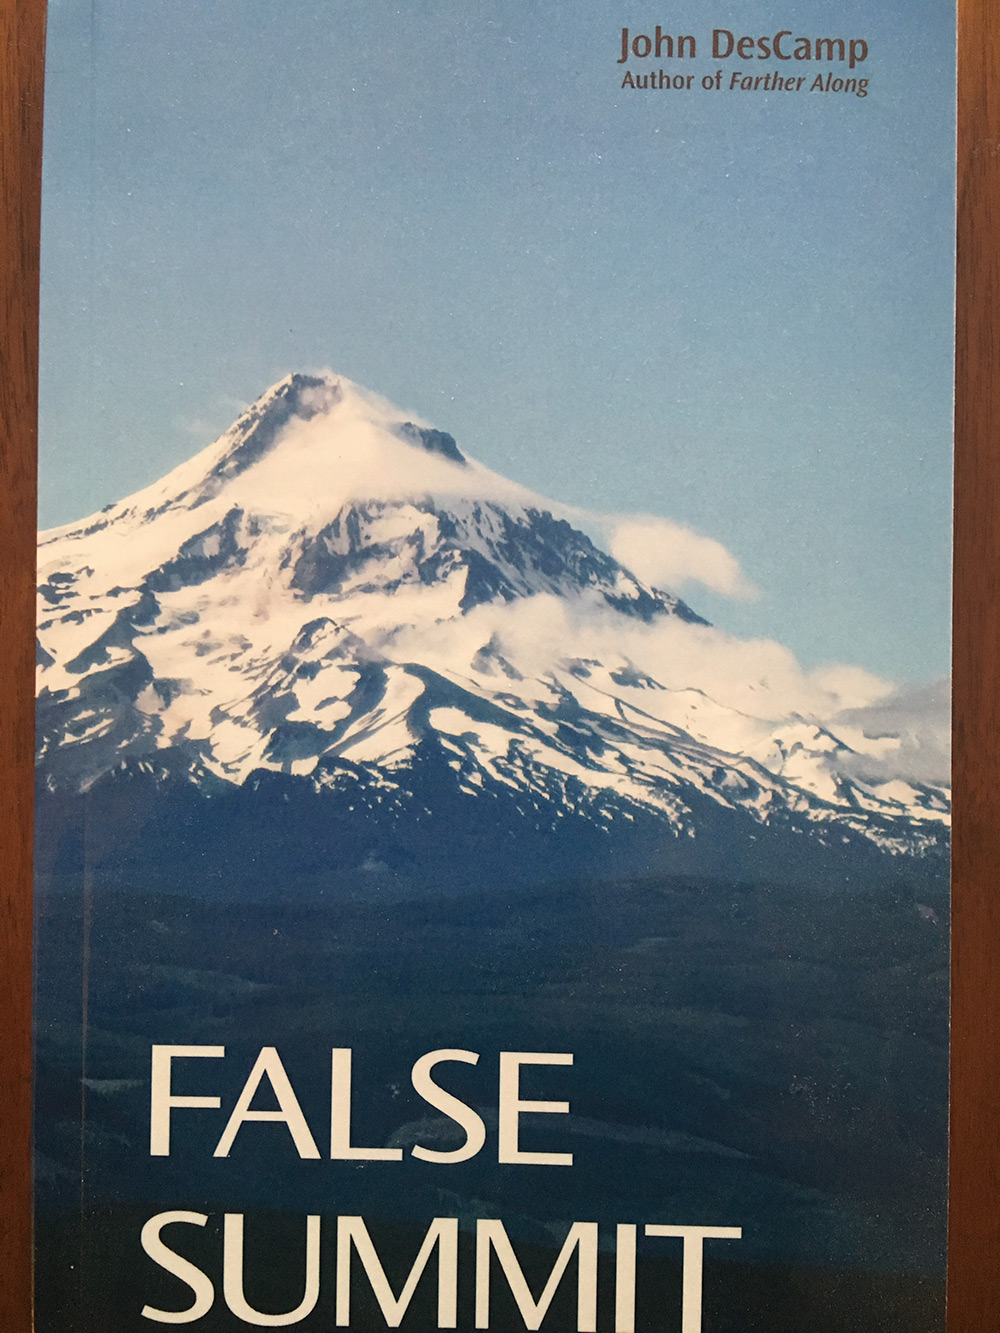 False Summit